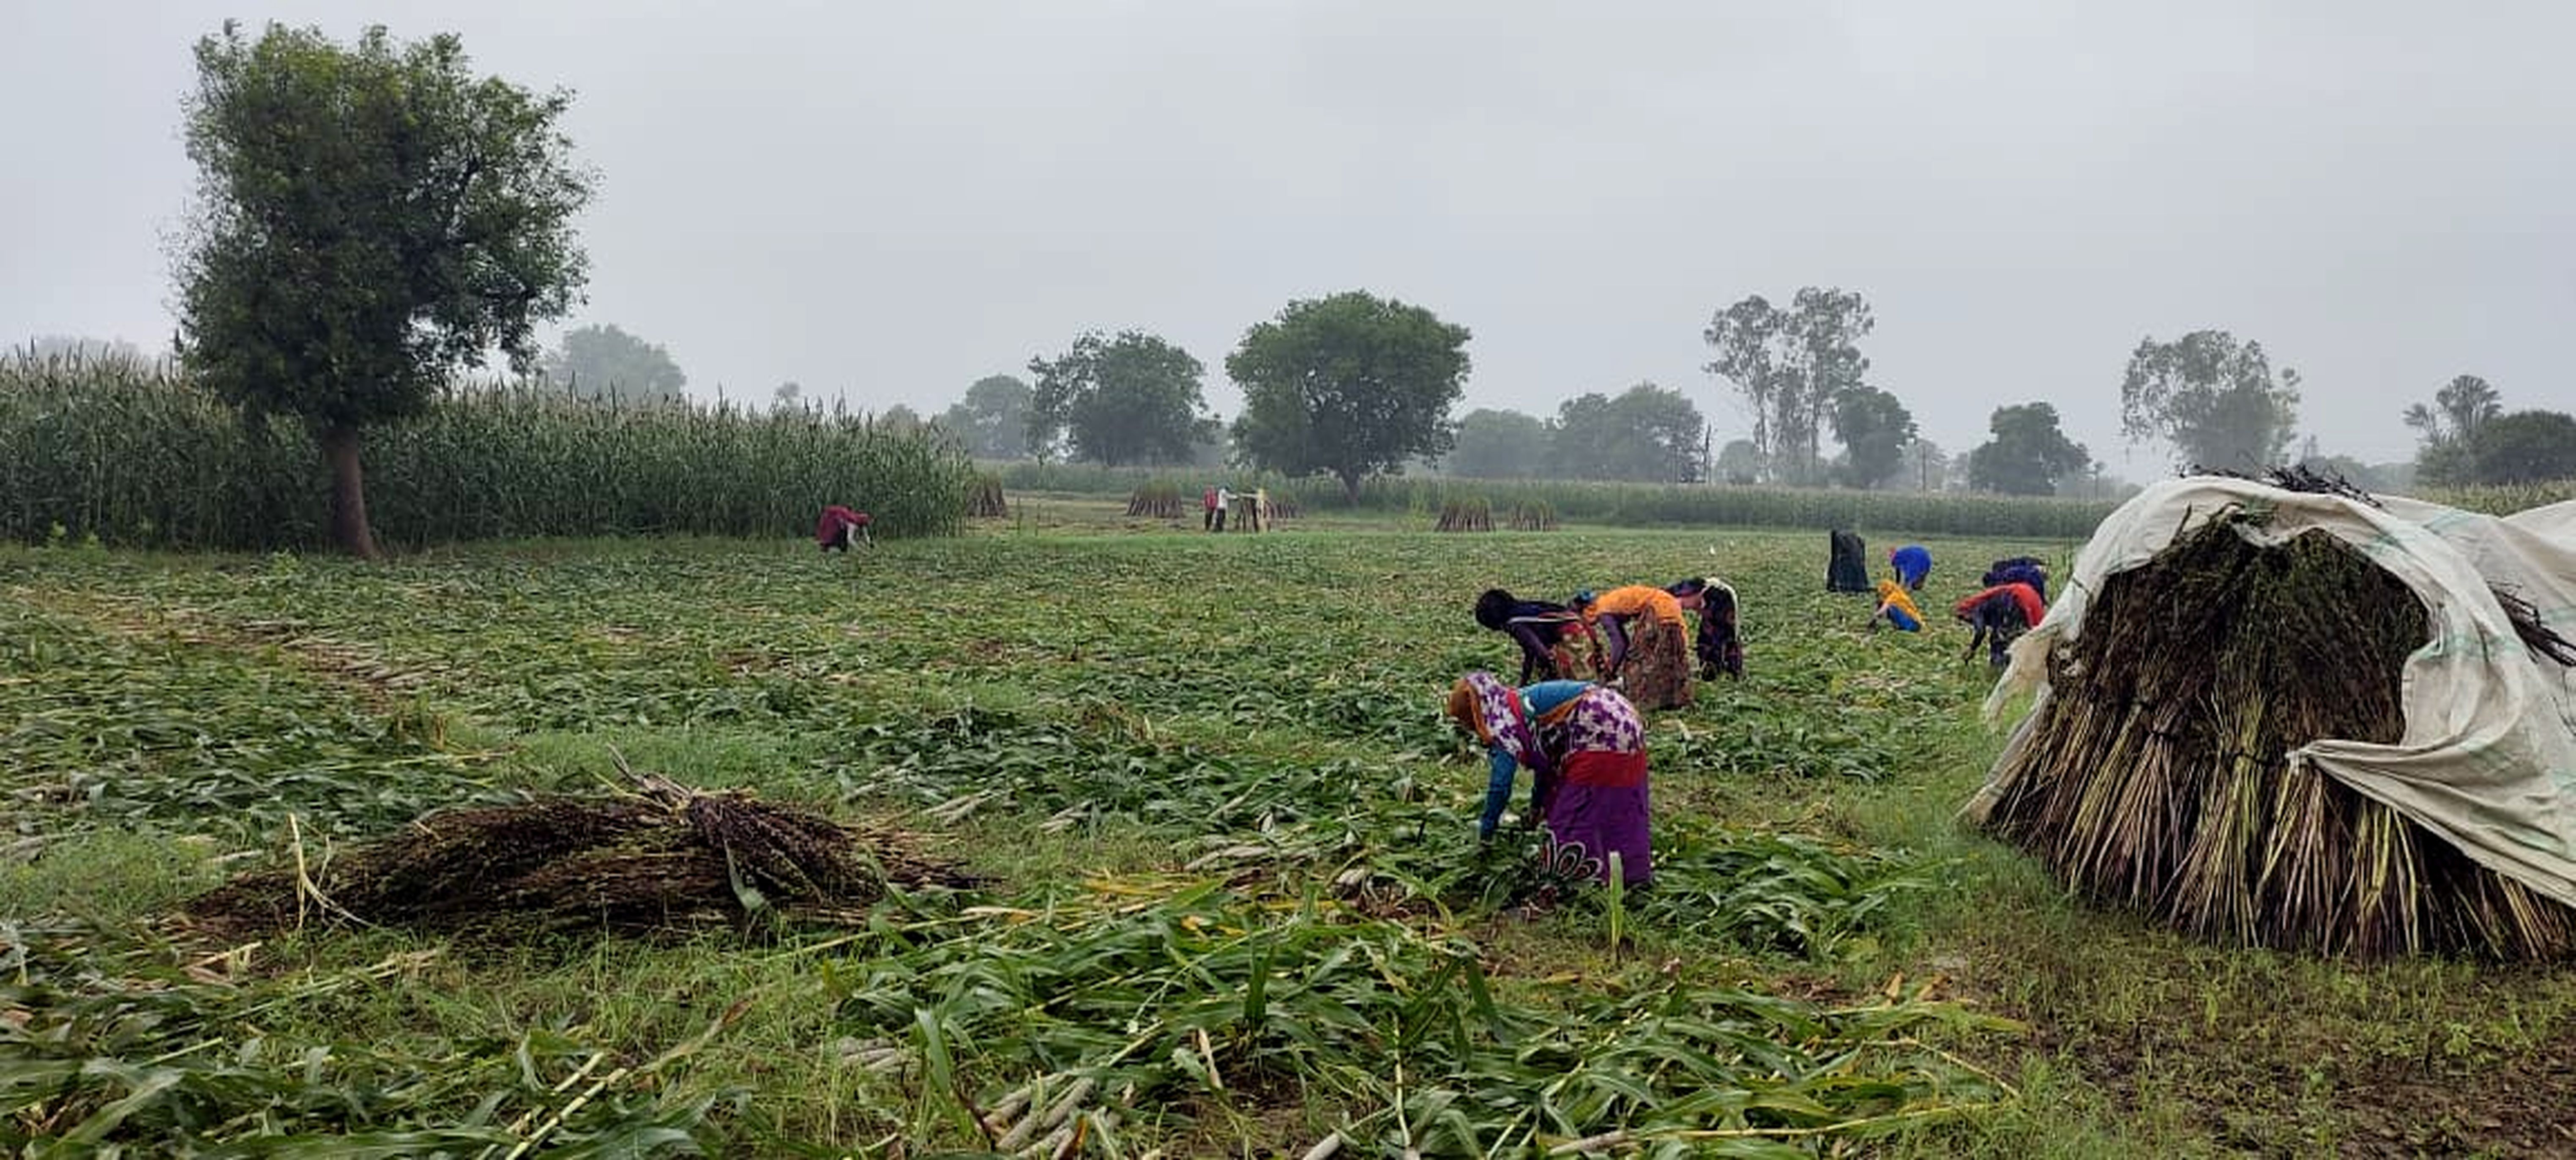 करौली: मौसम के बदले मिजाज ने बढ़ाई किसानों की बैचेनी